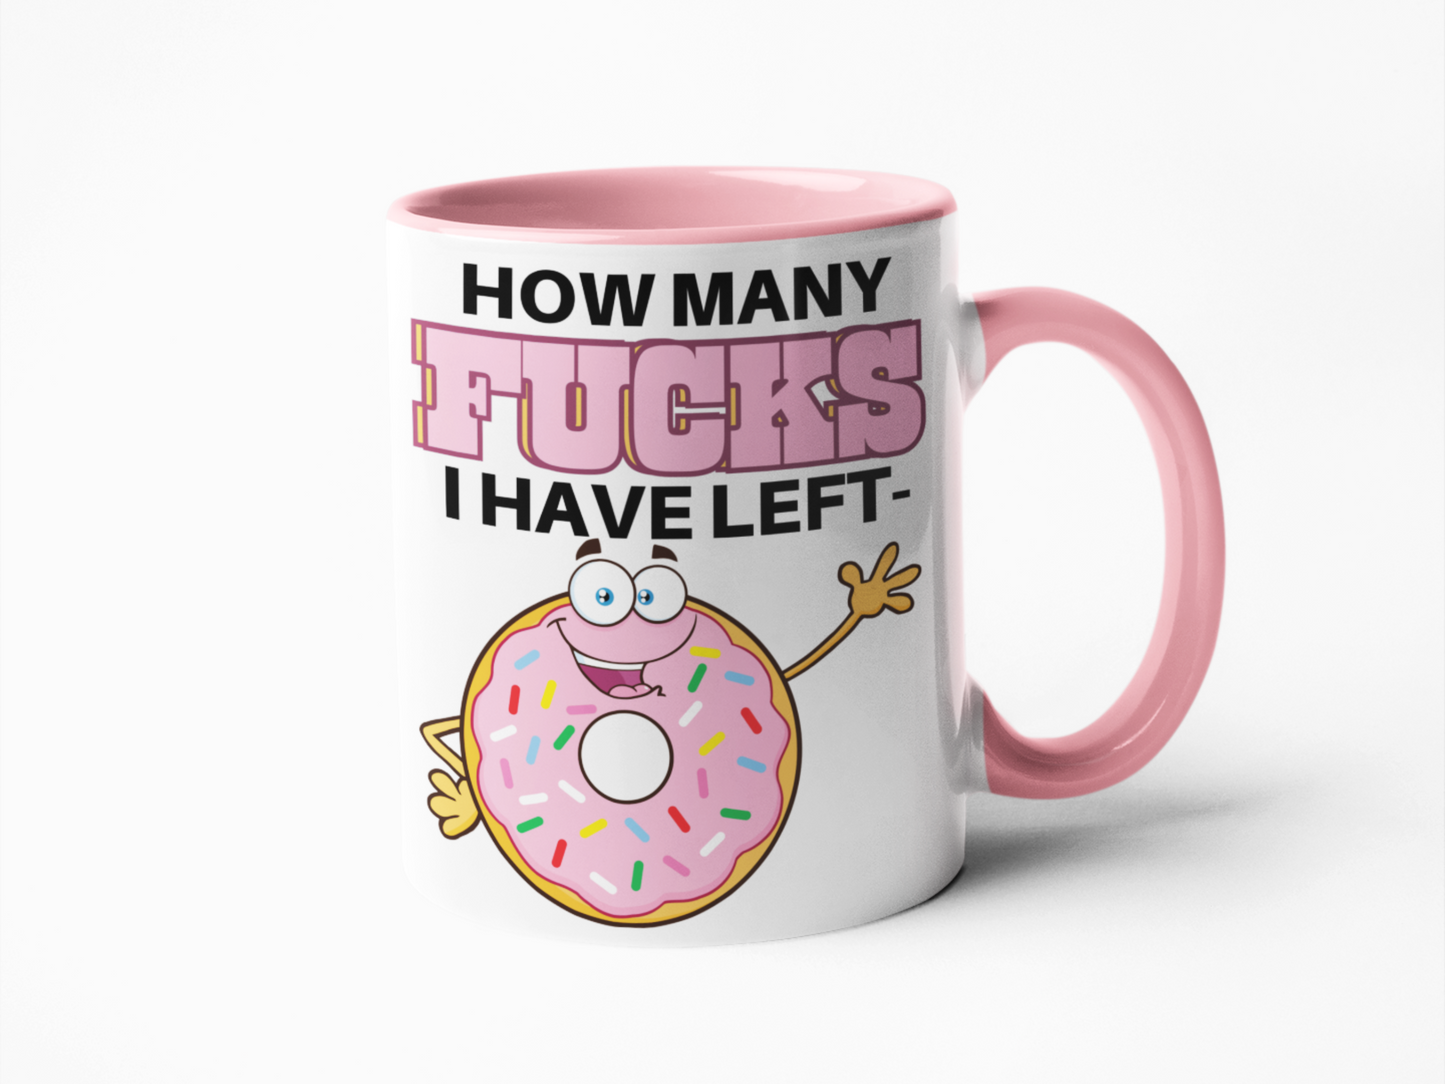 How many fucks left donut funny coffee mug